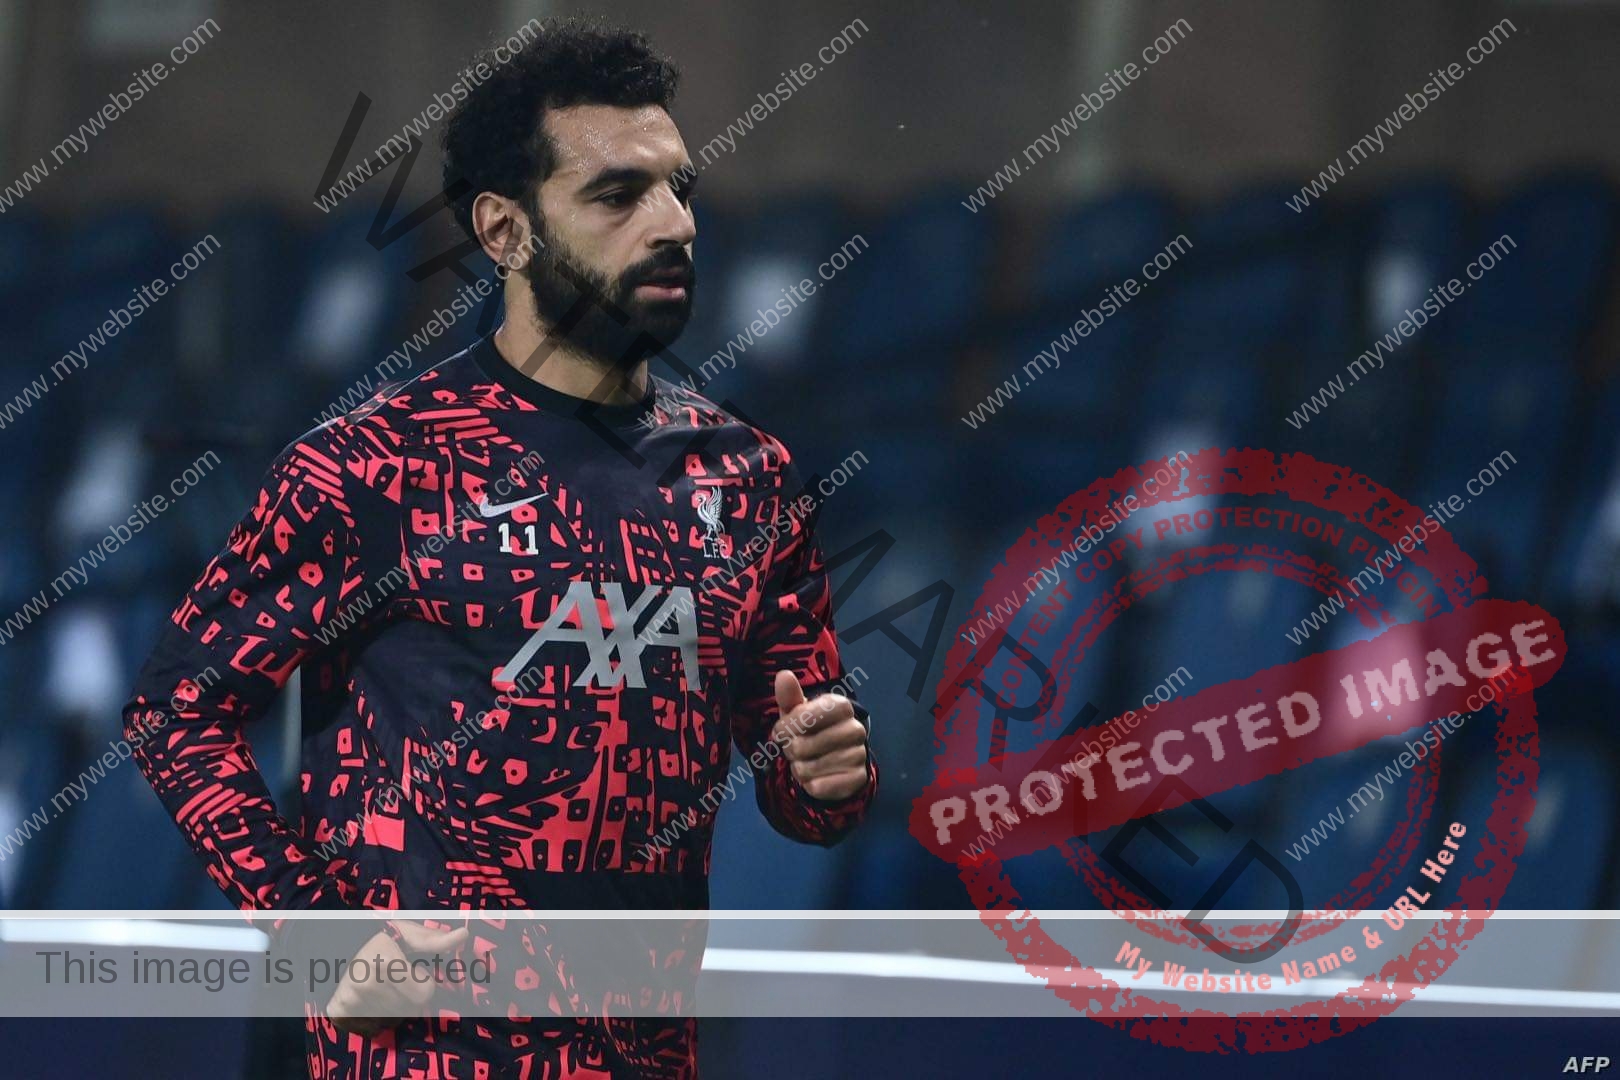 هاشتاج محمد صلاح يتصدر تويتر بعد جائزة أفضل لاعب في نادي ليفربول